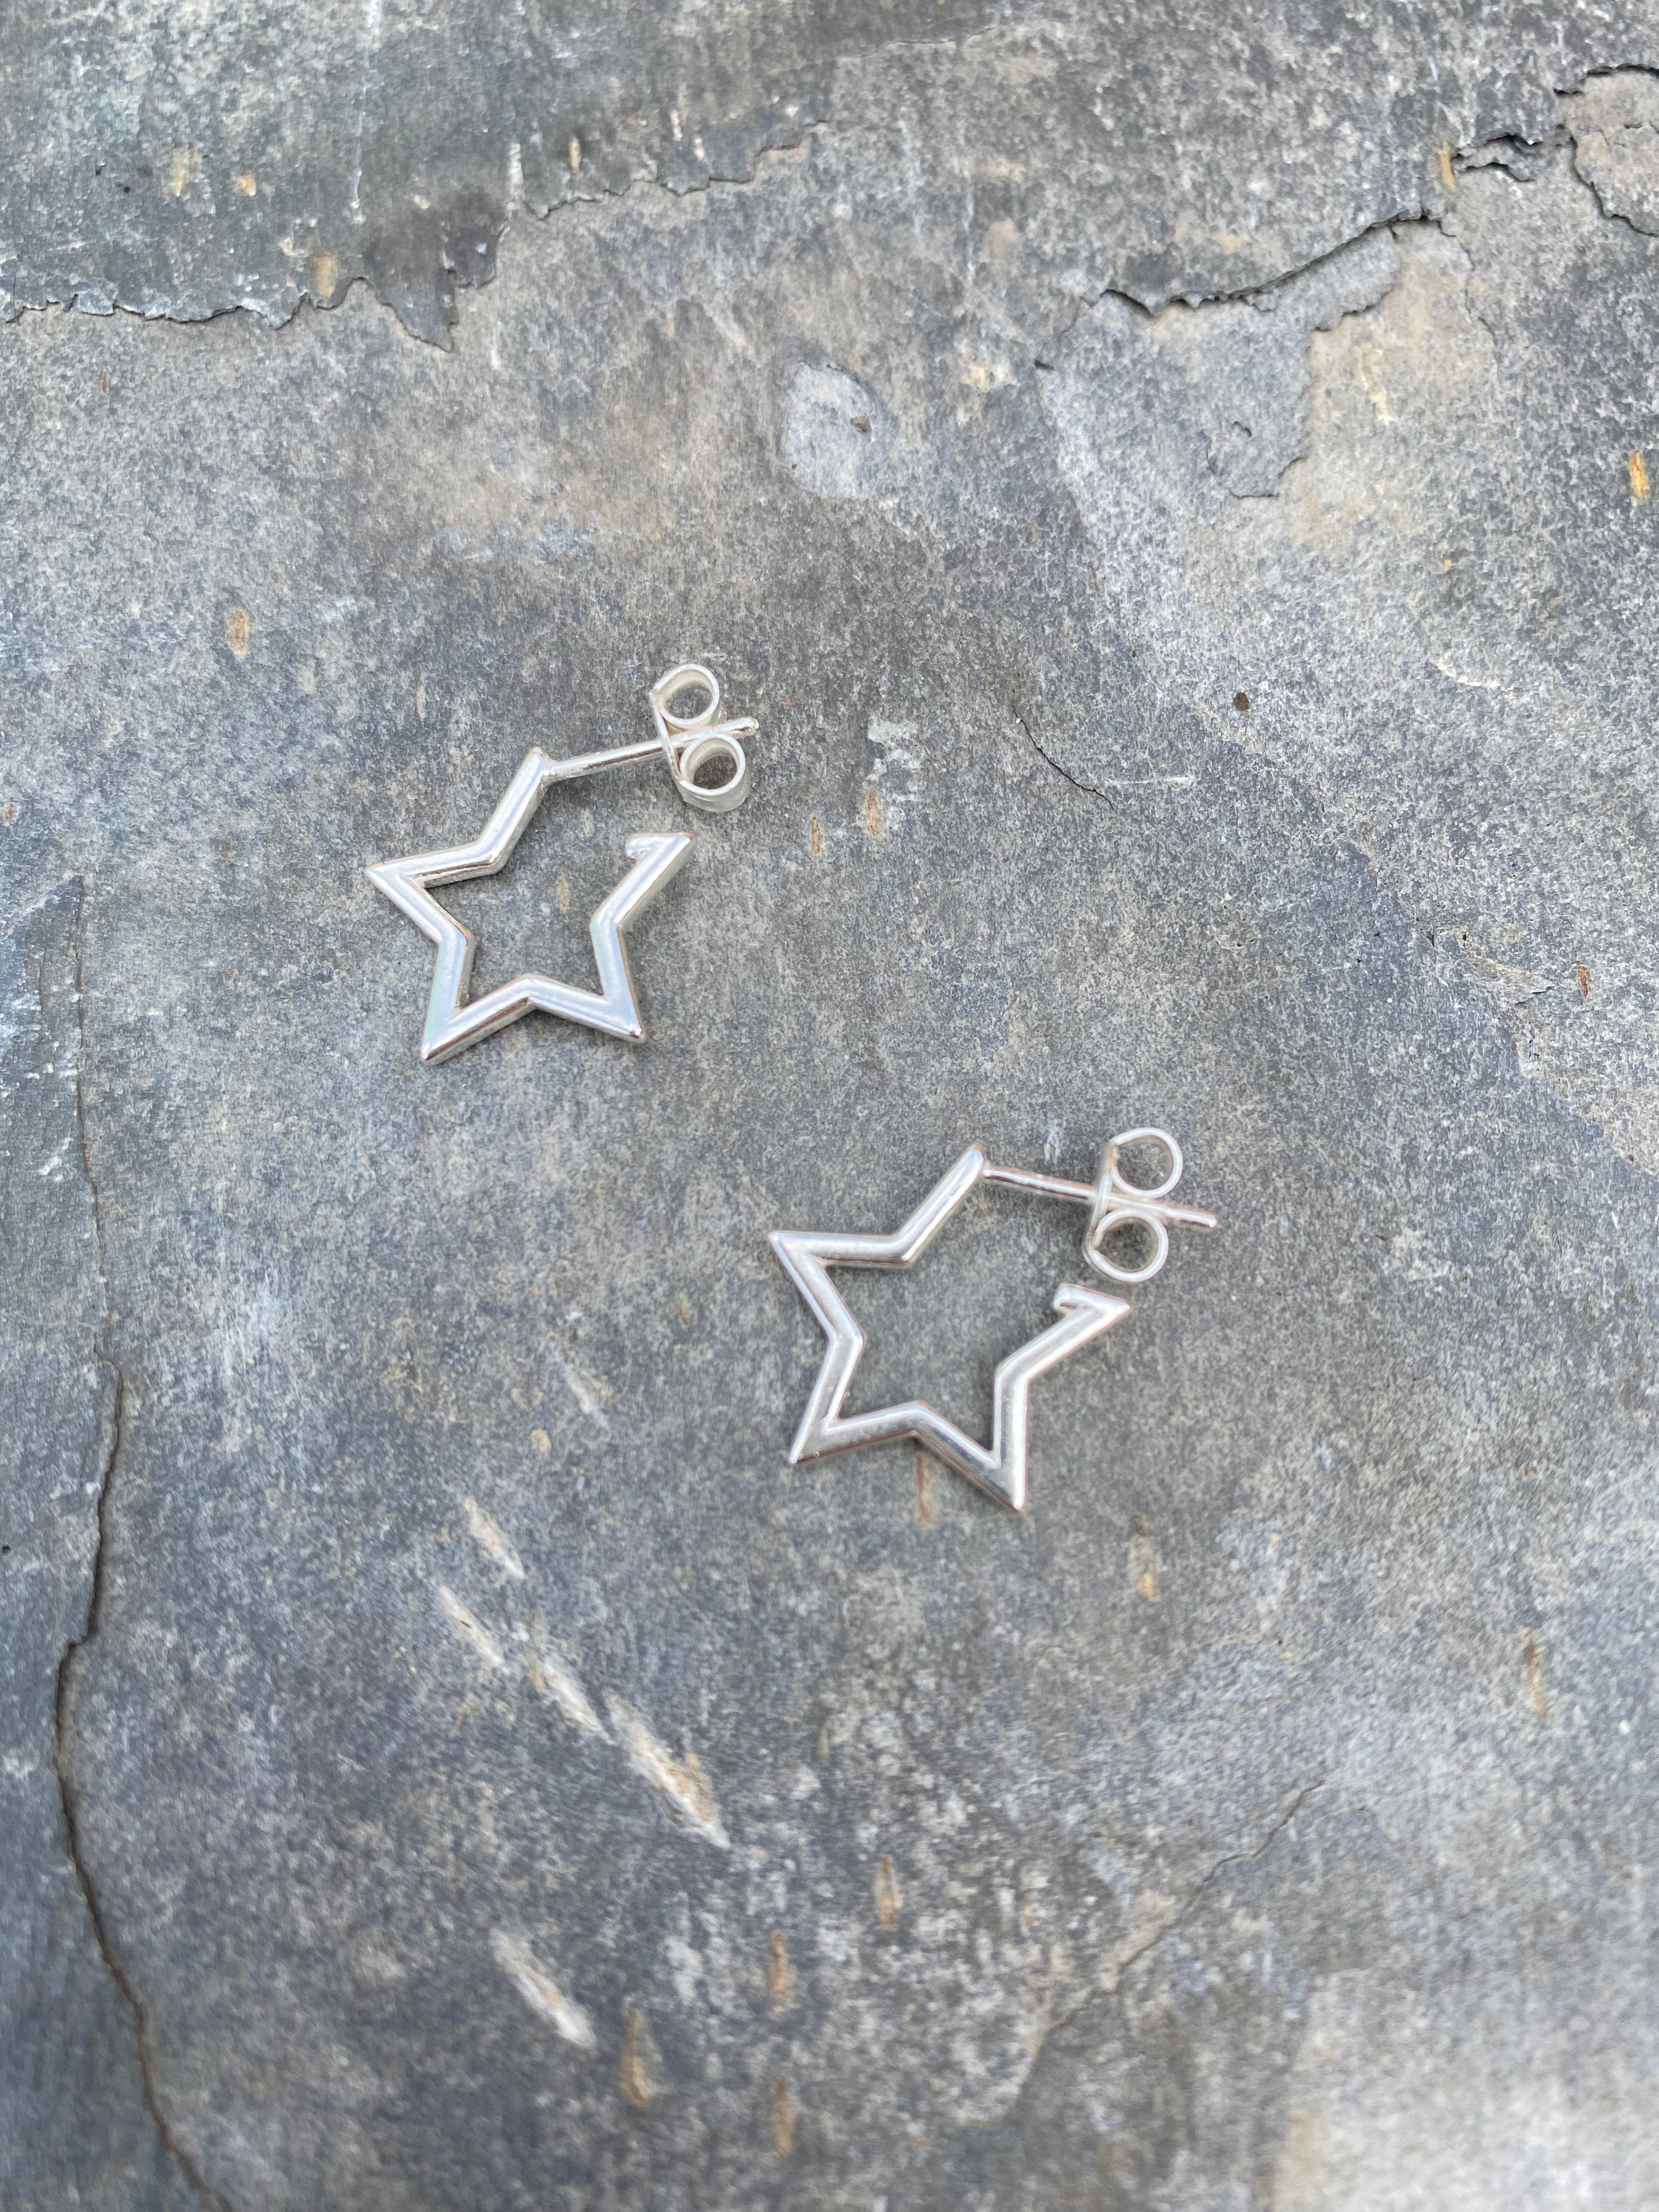 Star Stud Hoop Earrings - Sterling Silver Jewellery